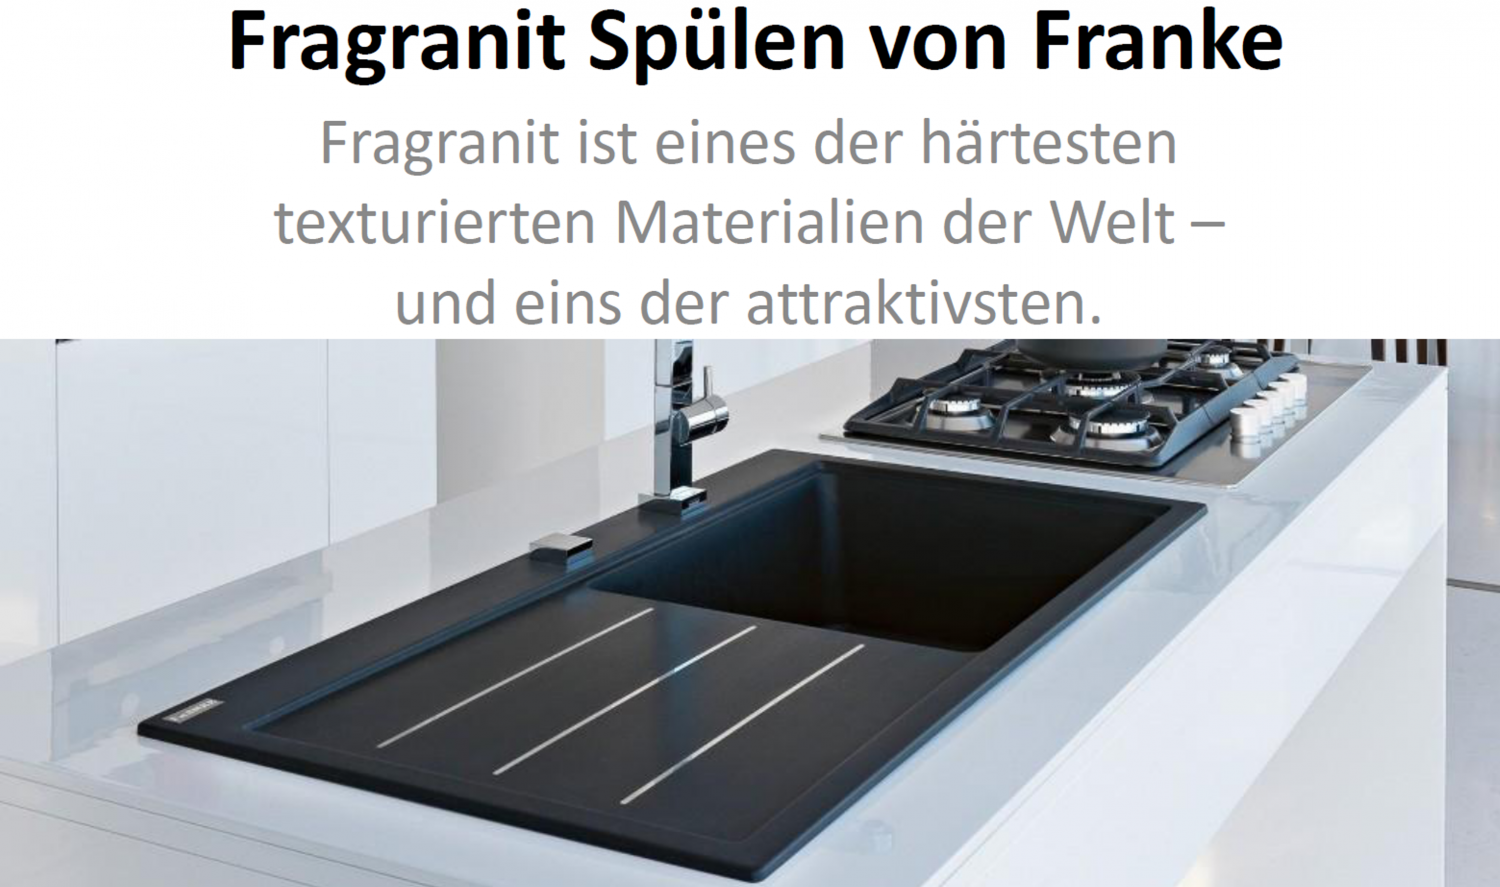 Franke Strata STG 614 Umbra Granit Spülbecken Küchenspüle Grau Einbauspüle 45US